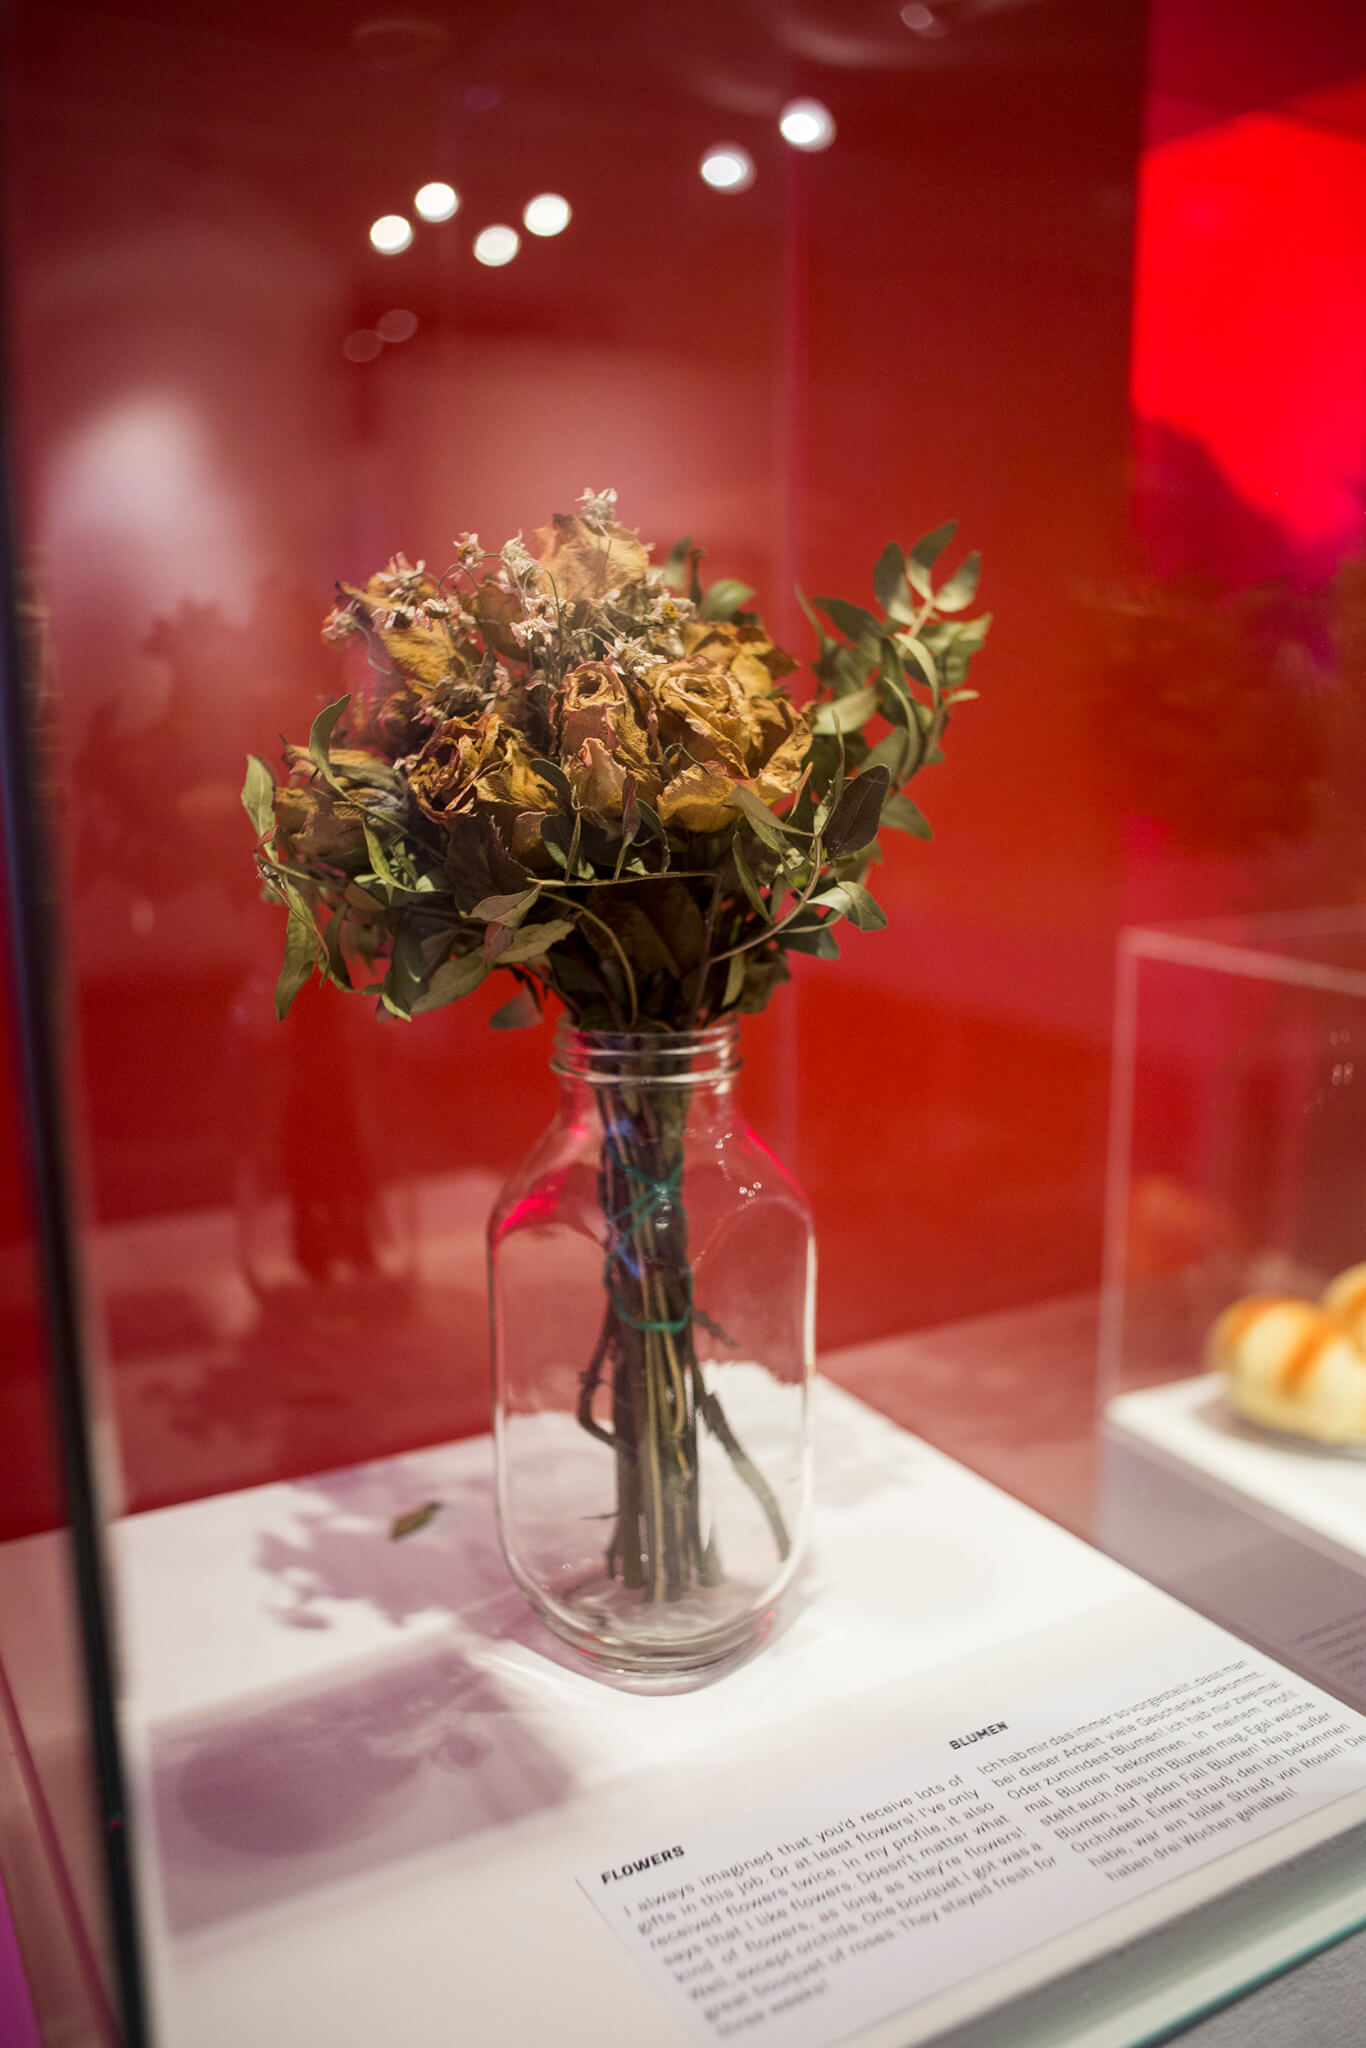 Flowers / Blumen sex work sexarbeit objects of desire berlin schwules museum activism